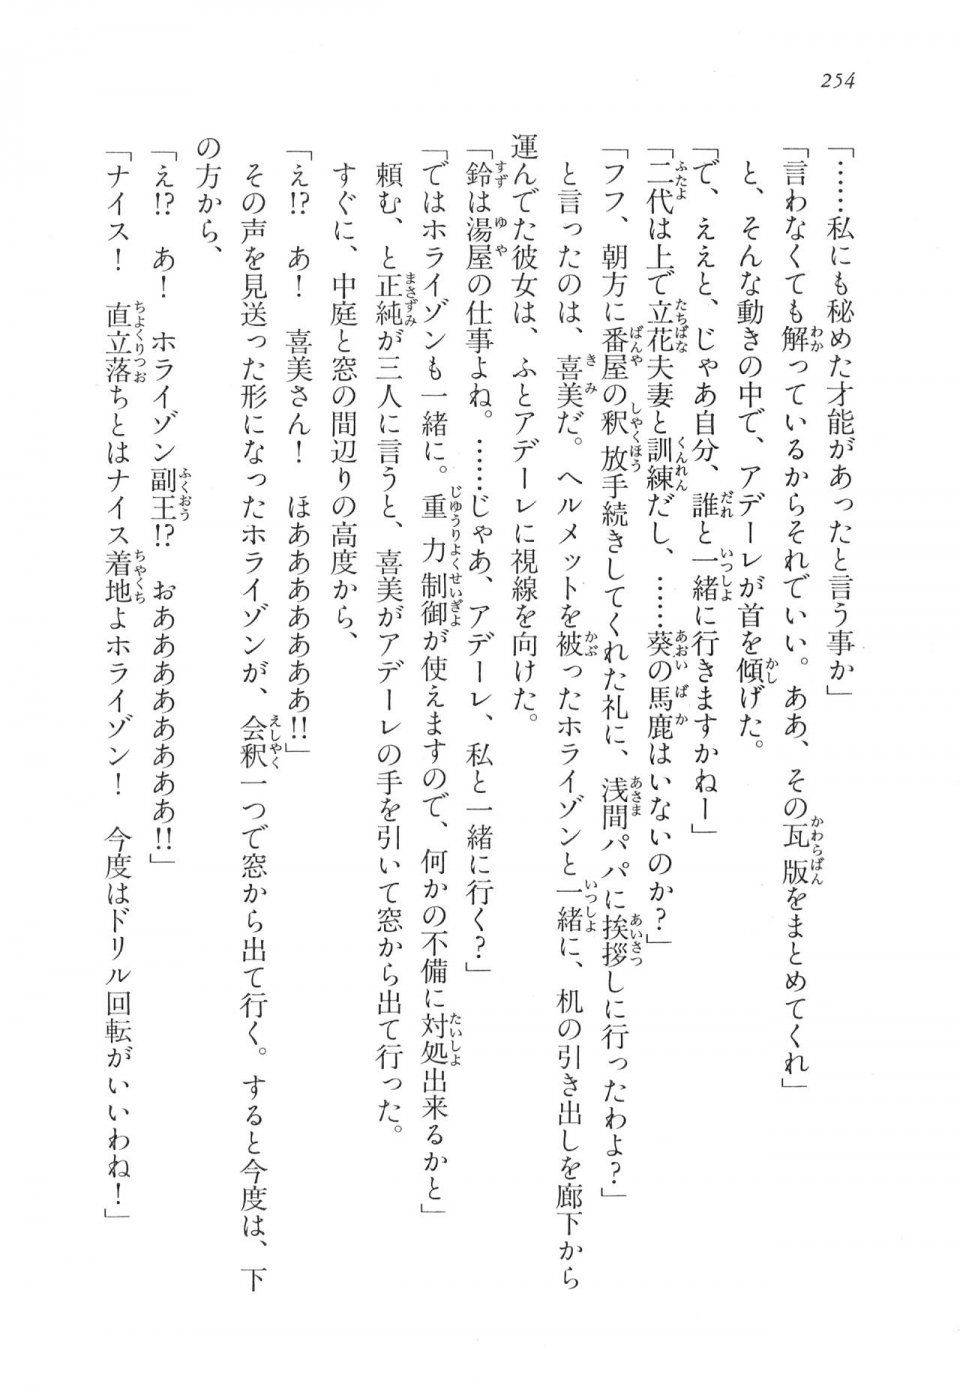 Kyoukai Senjou no Horizon LN Vol 11(5A) - Photo #254